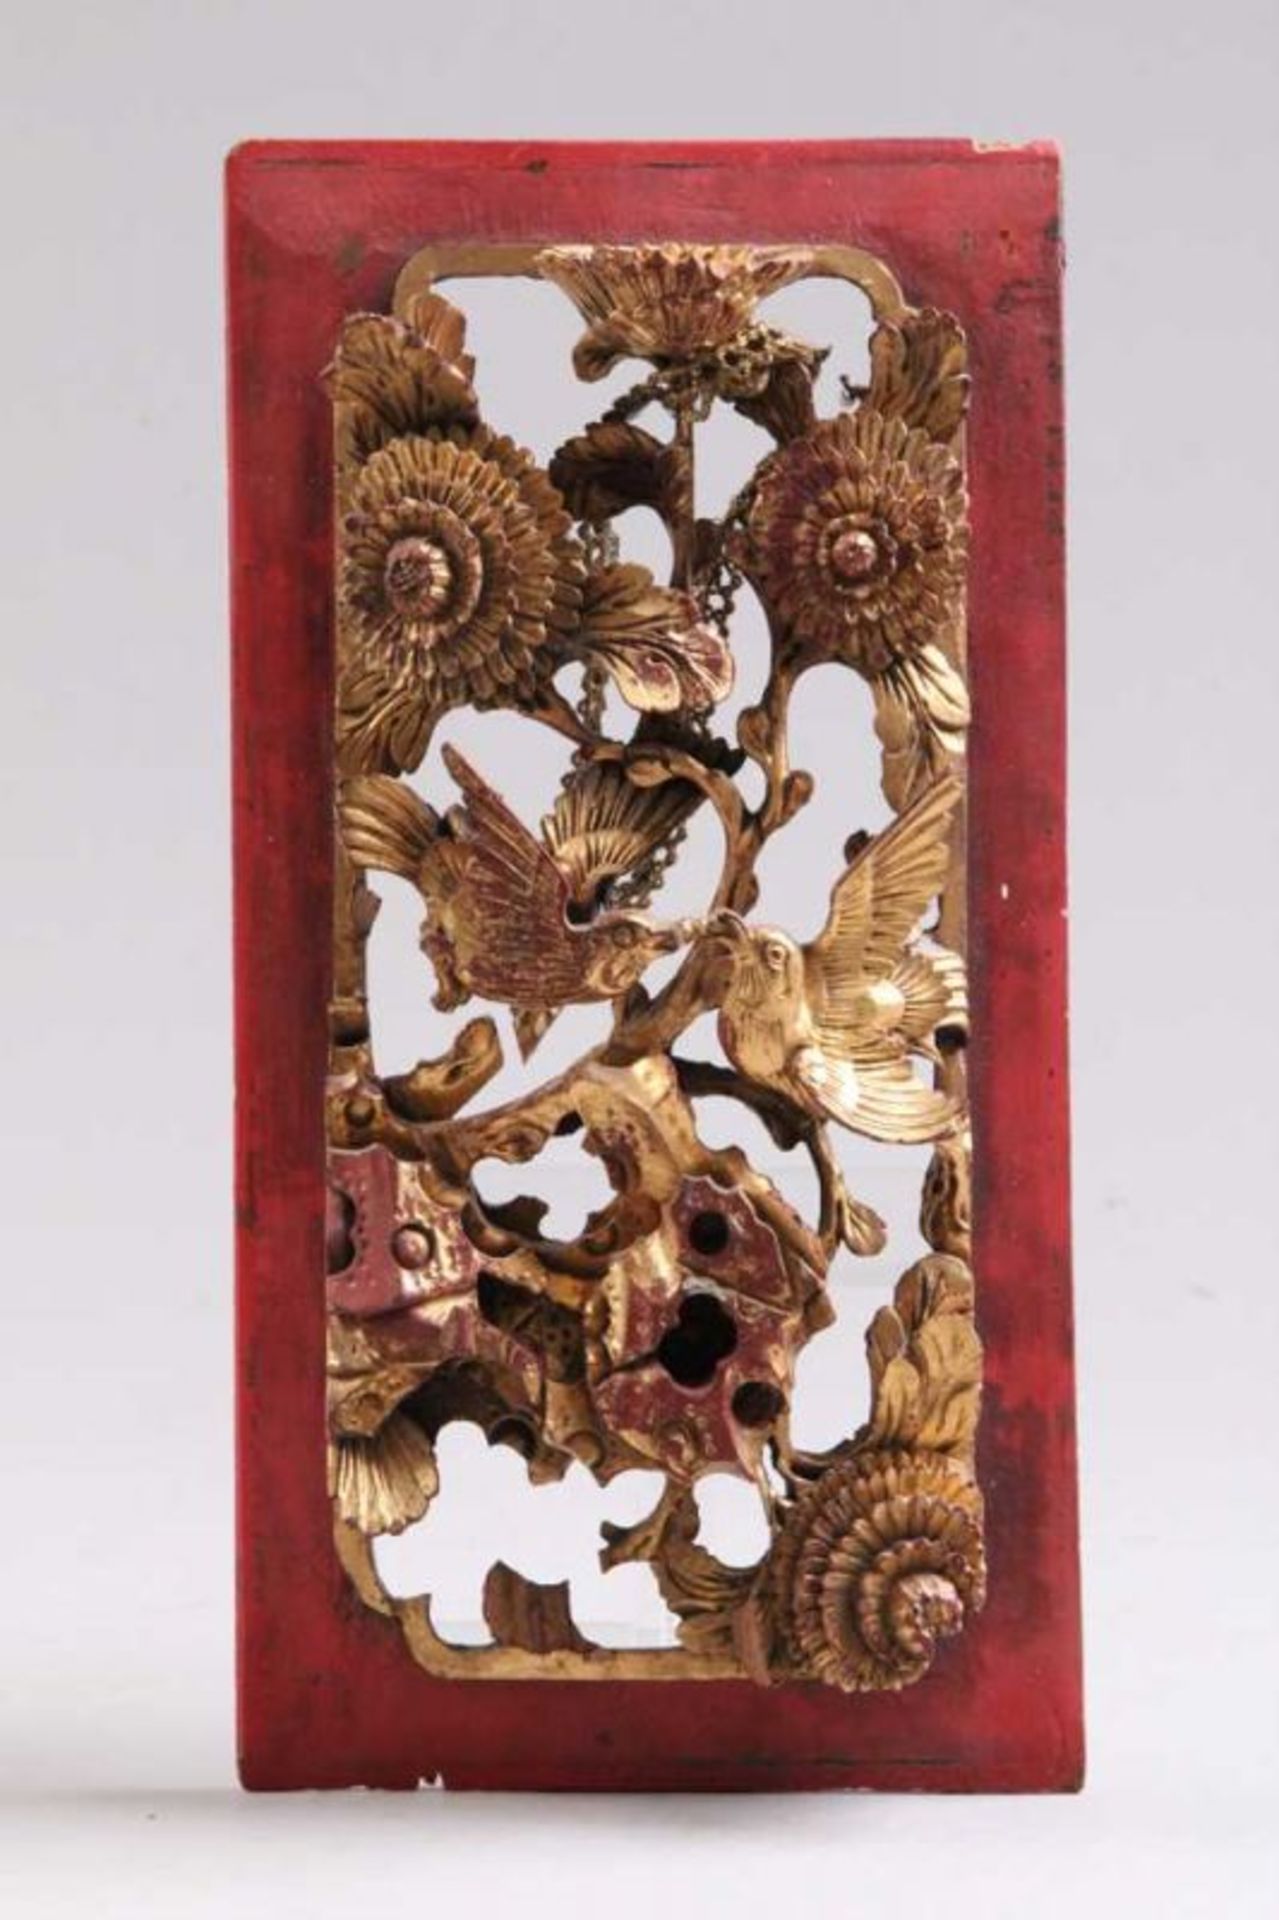 Schnitzerei.China, nach 1900. Holz, reich geschnitzt, mit Blüten und Vögeln, teils gold dekoriert.